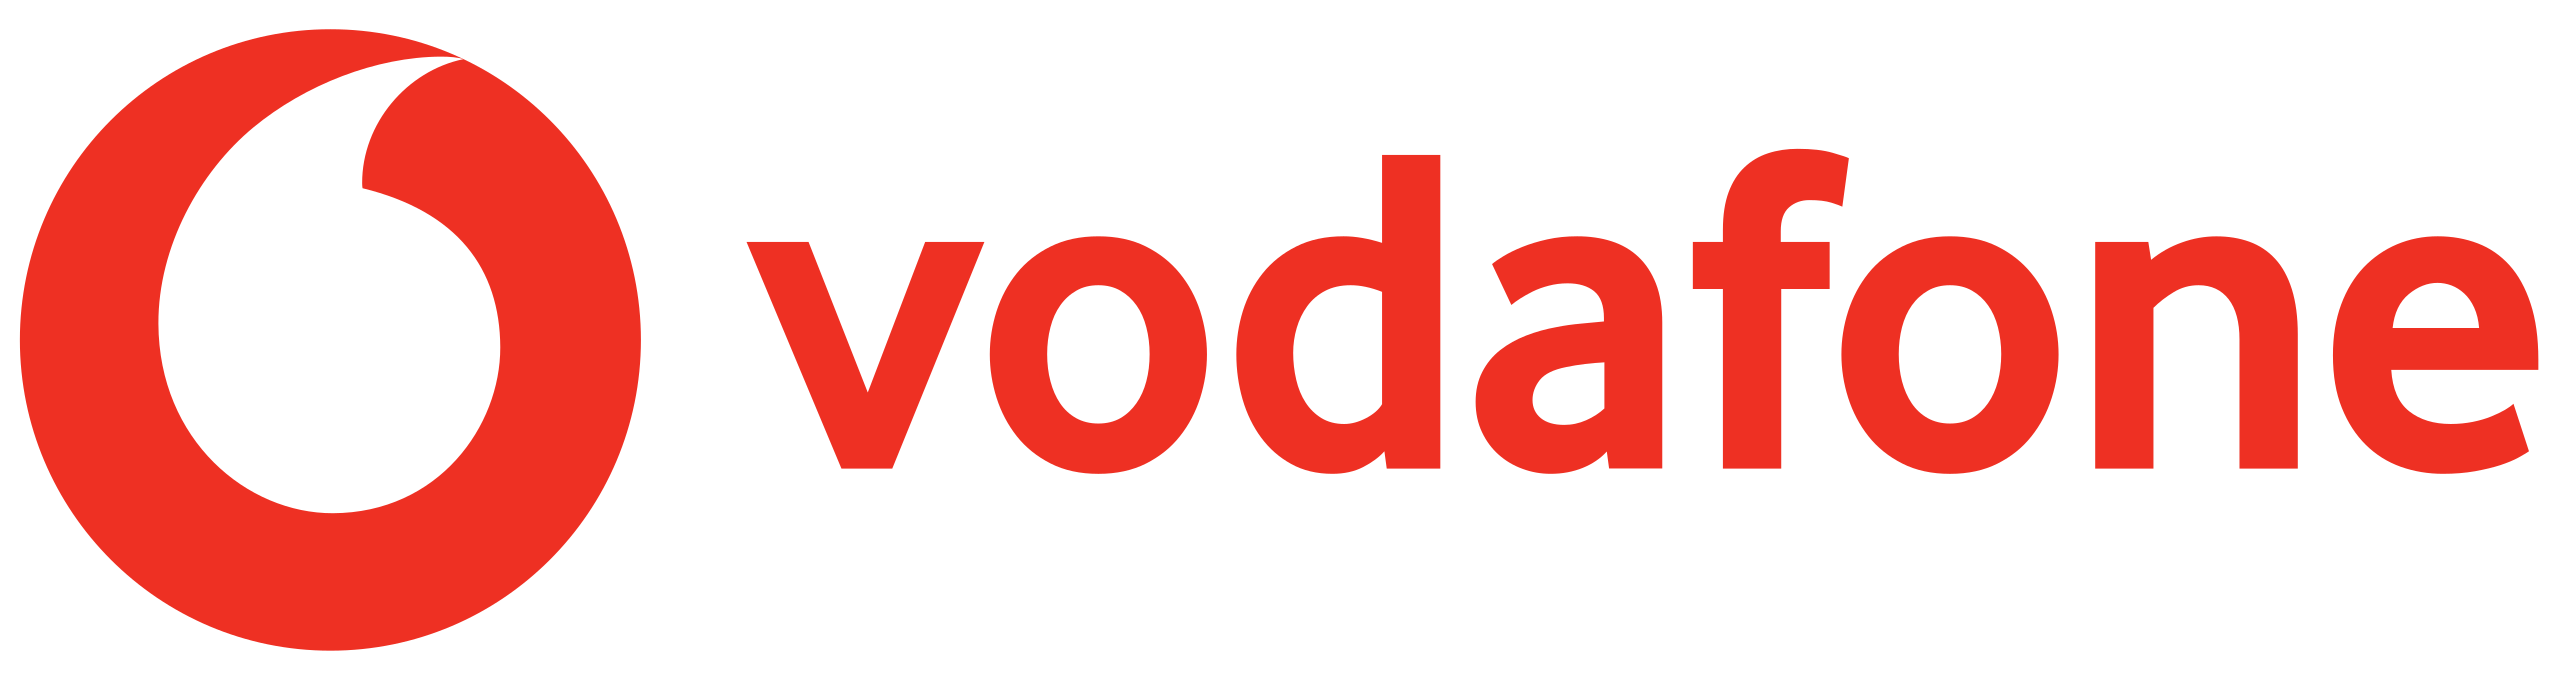 Vodafone | EKA Sistem